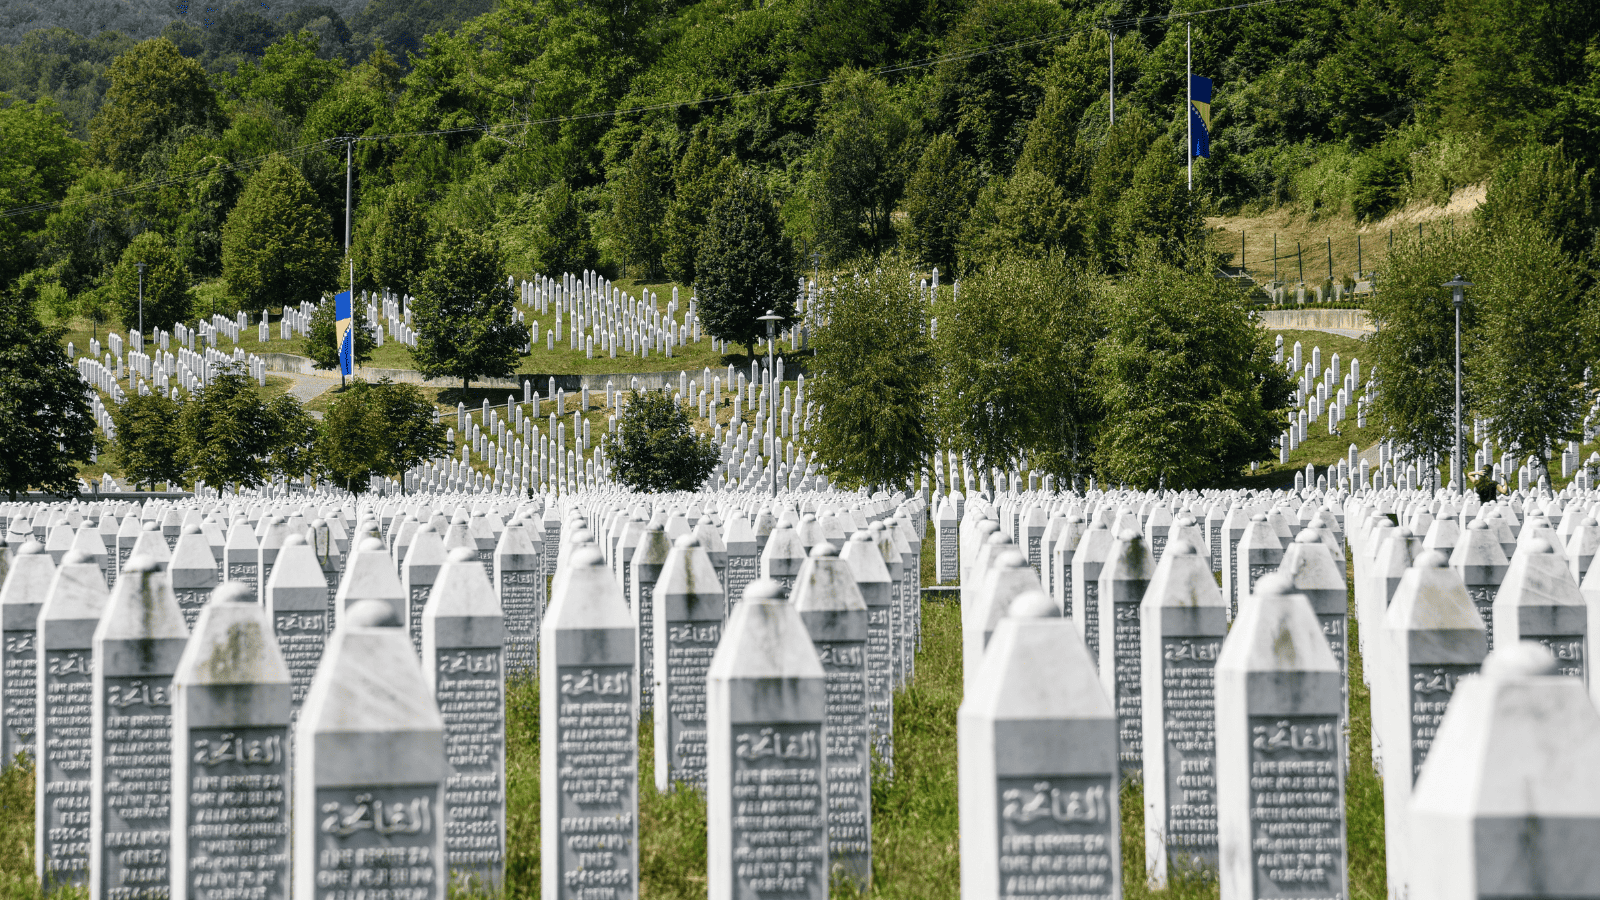 The Srebrenica Genocide Memorial in Bosnia and Herzegovina